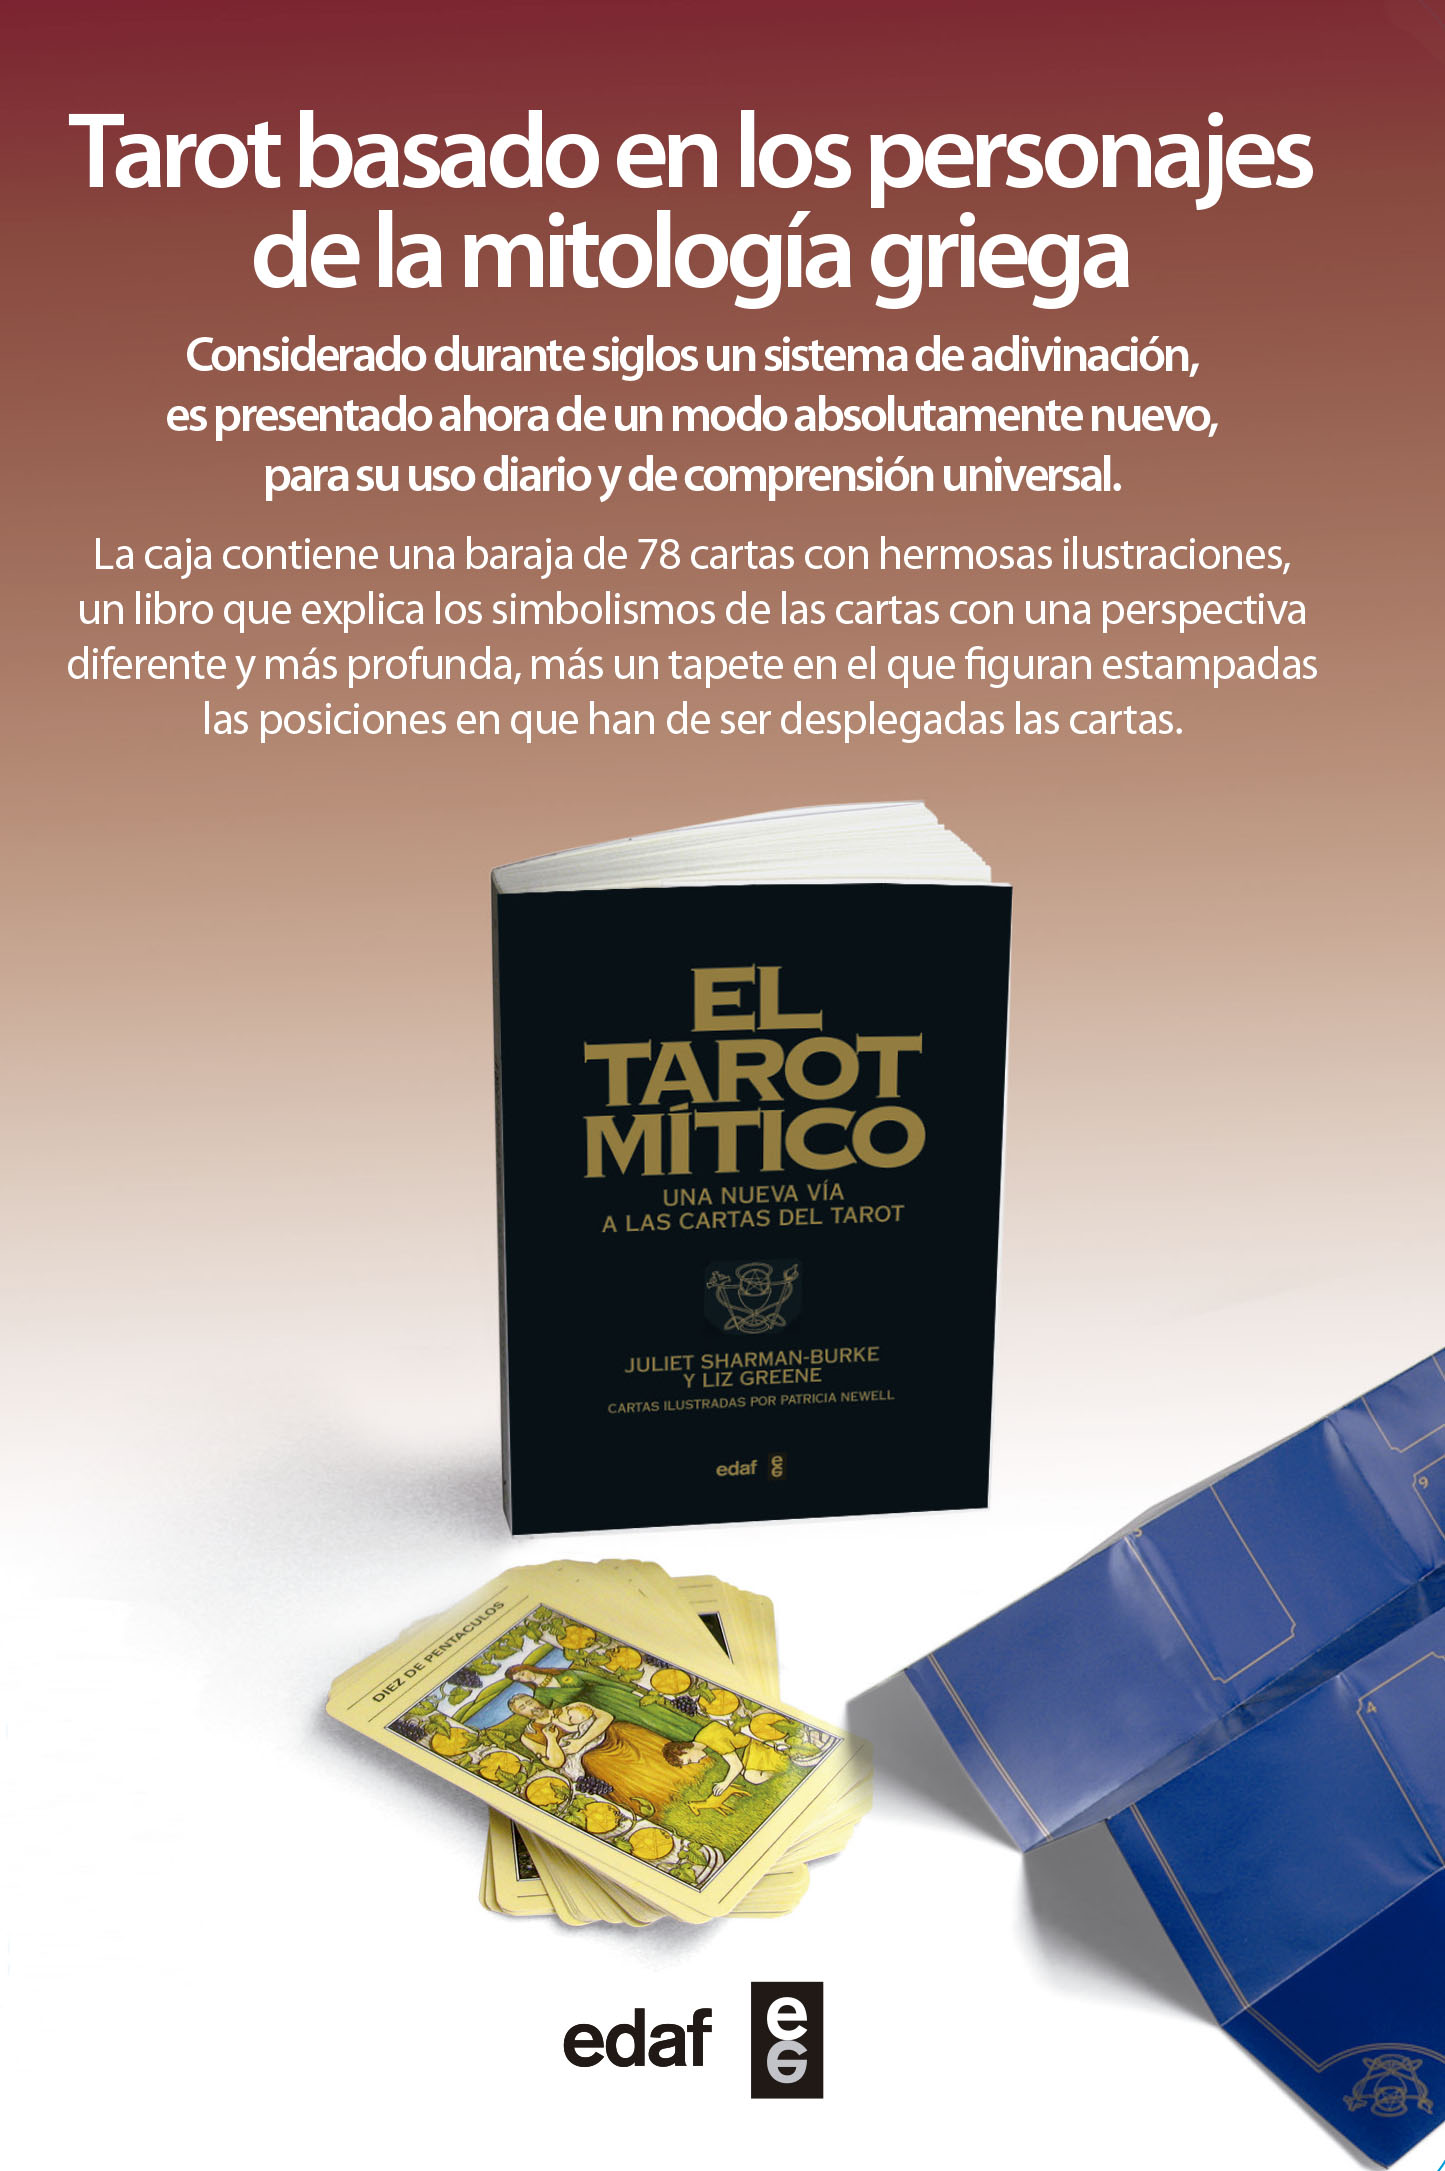 El tarot mítico (Libro y cartas)   «Una nueva vía a las cartas del Tarot» (9788441428485)